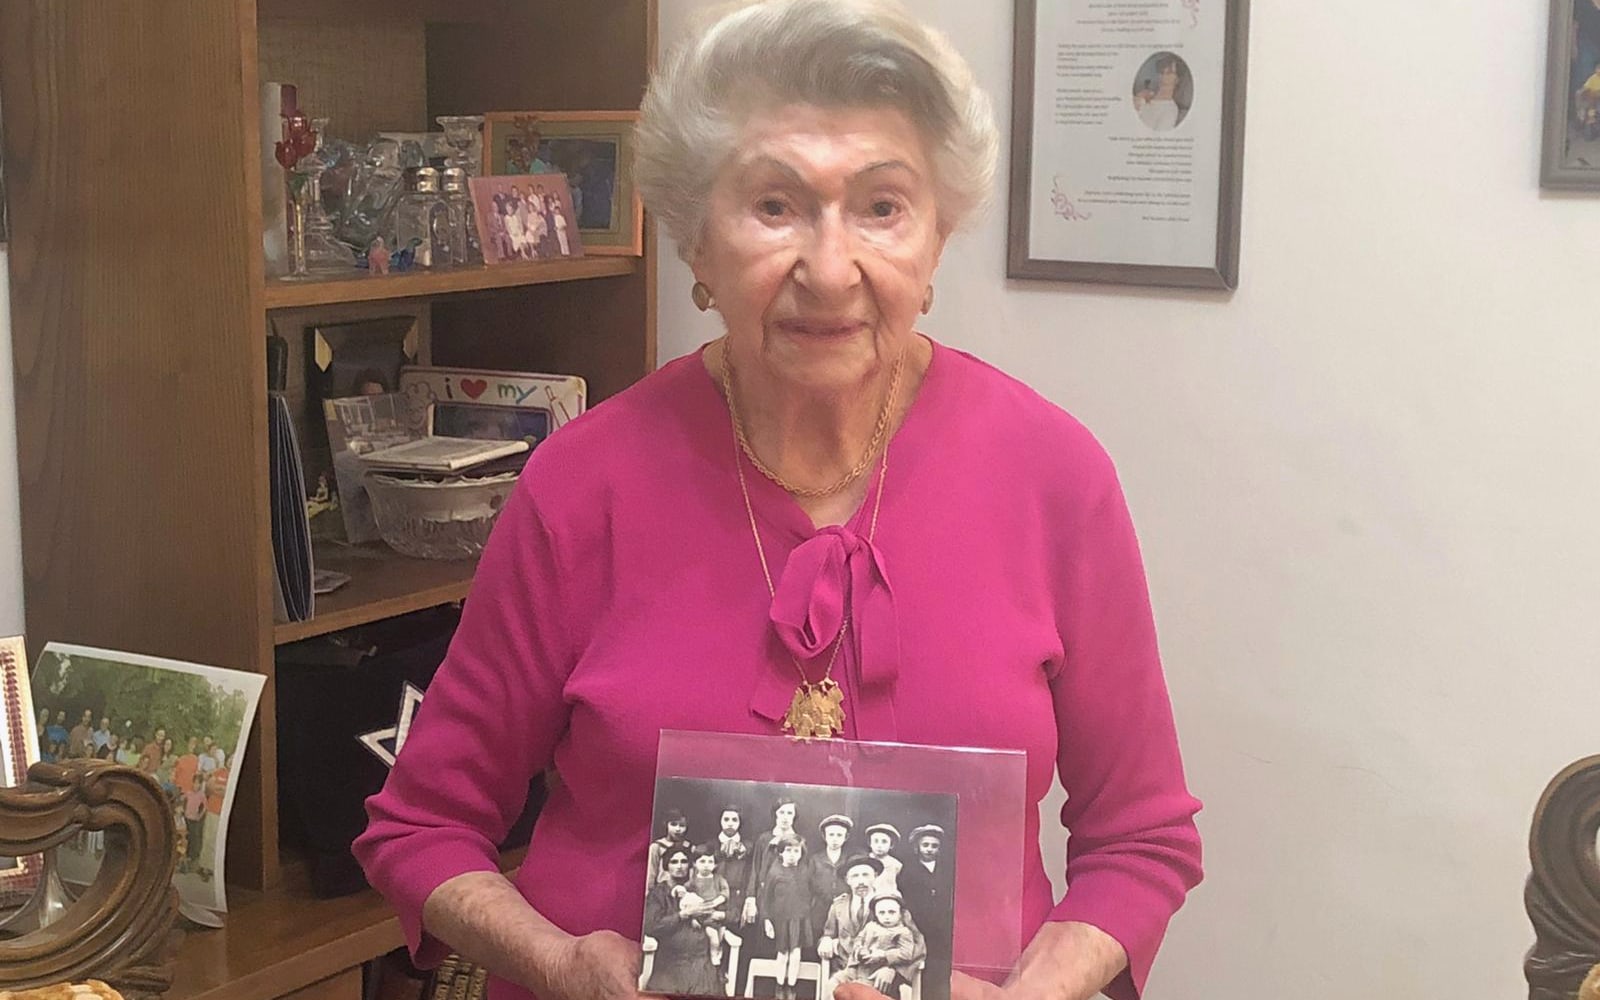 אולגה ציק קיי מחזיקה תמונה של משפחתה באויפהרטו, הונגריה, מלפני מלחמת העולם השנייה, בביתה בשערי תקווה, 17 באפריל 2022 (צילום: רנה גרט-זנד)